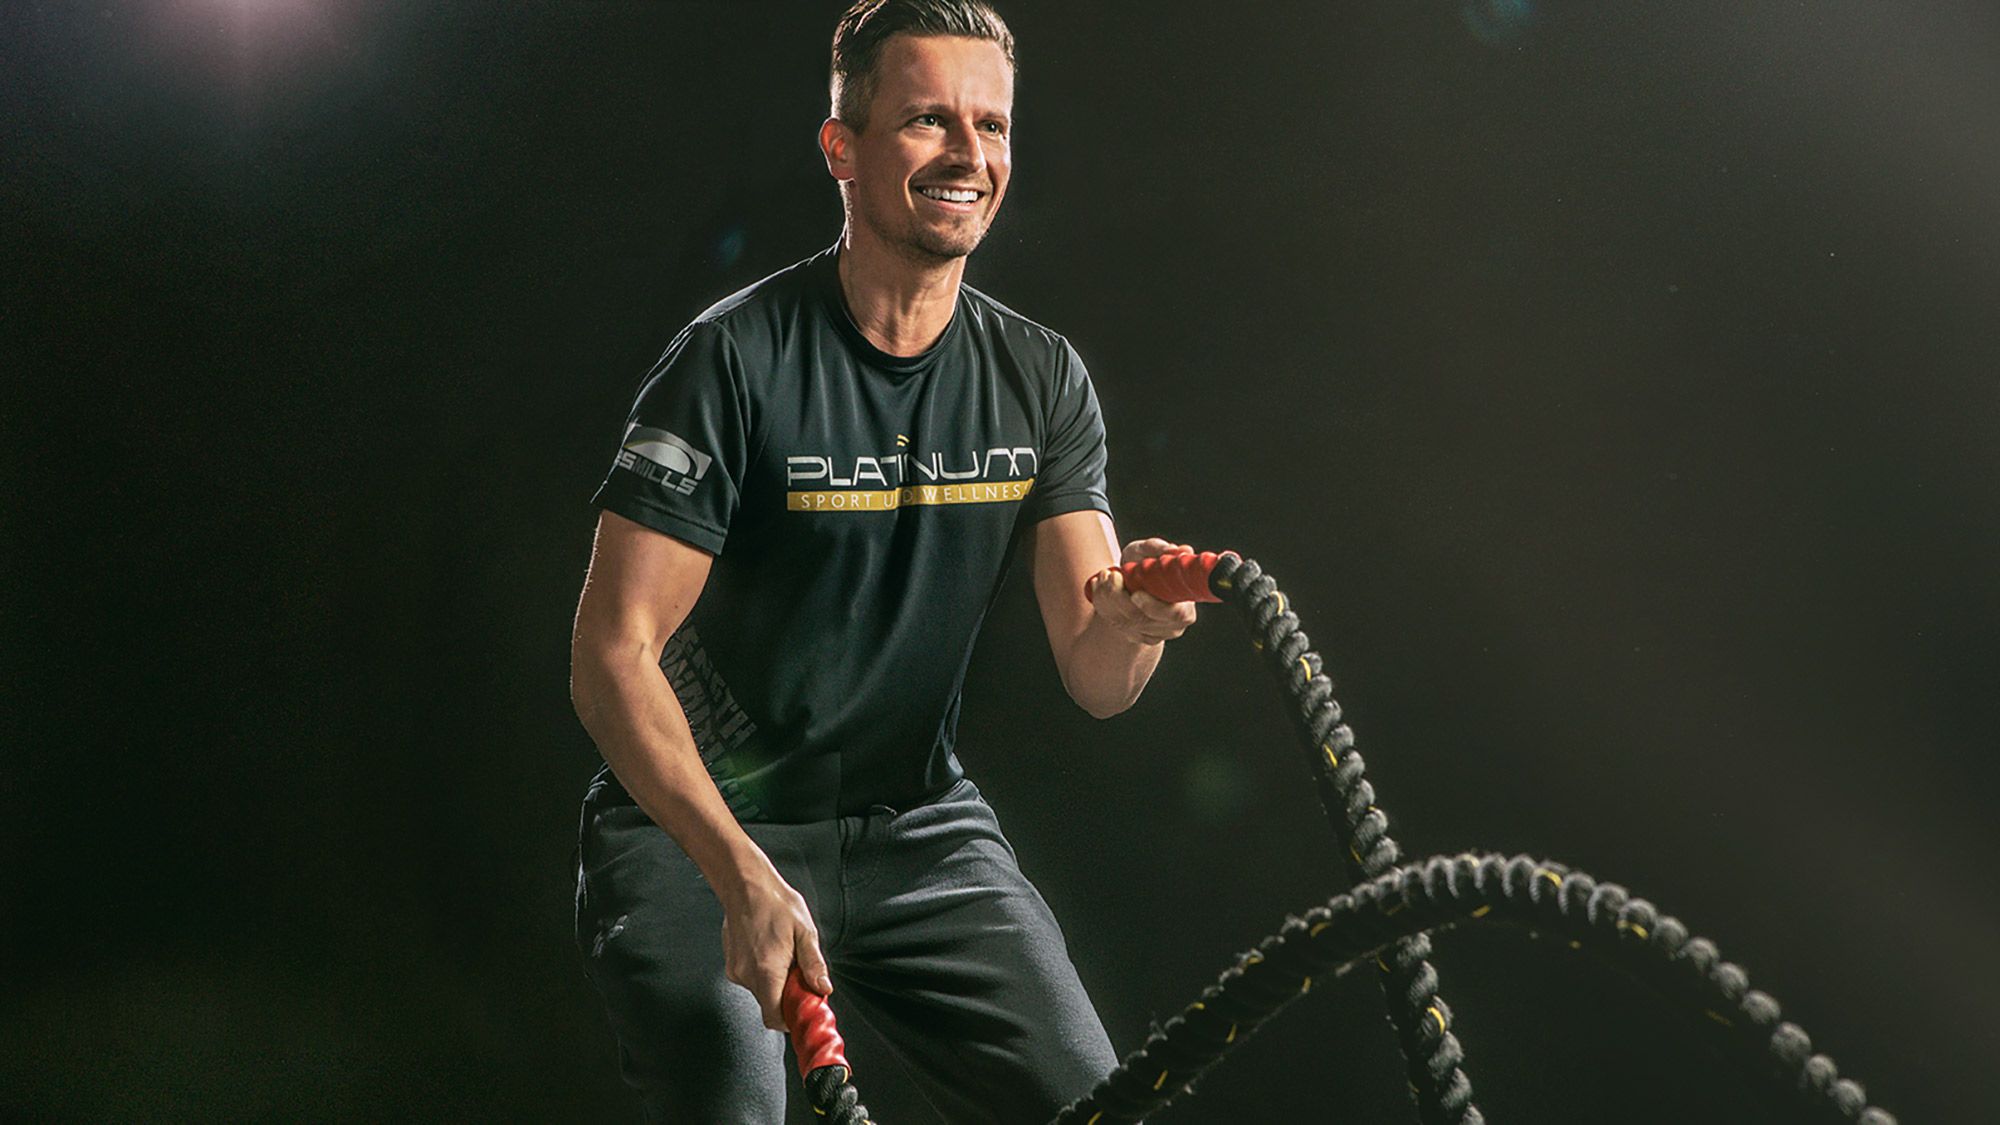 Dieses dynamische Fitnessfoto aufgenommen von dem Frankfurter Fotografen Fritz Philipp zeigt einen Sportler vor schwarzem Hintergrund der mit viel Spaß Seile schwingt